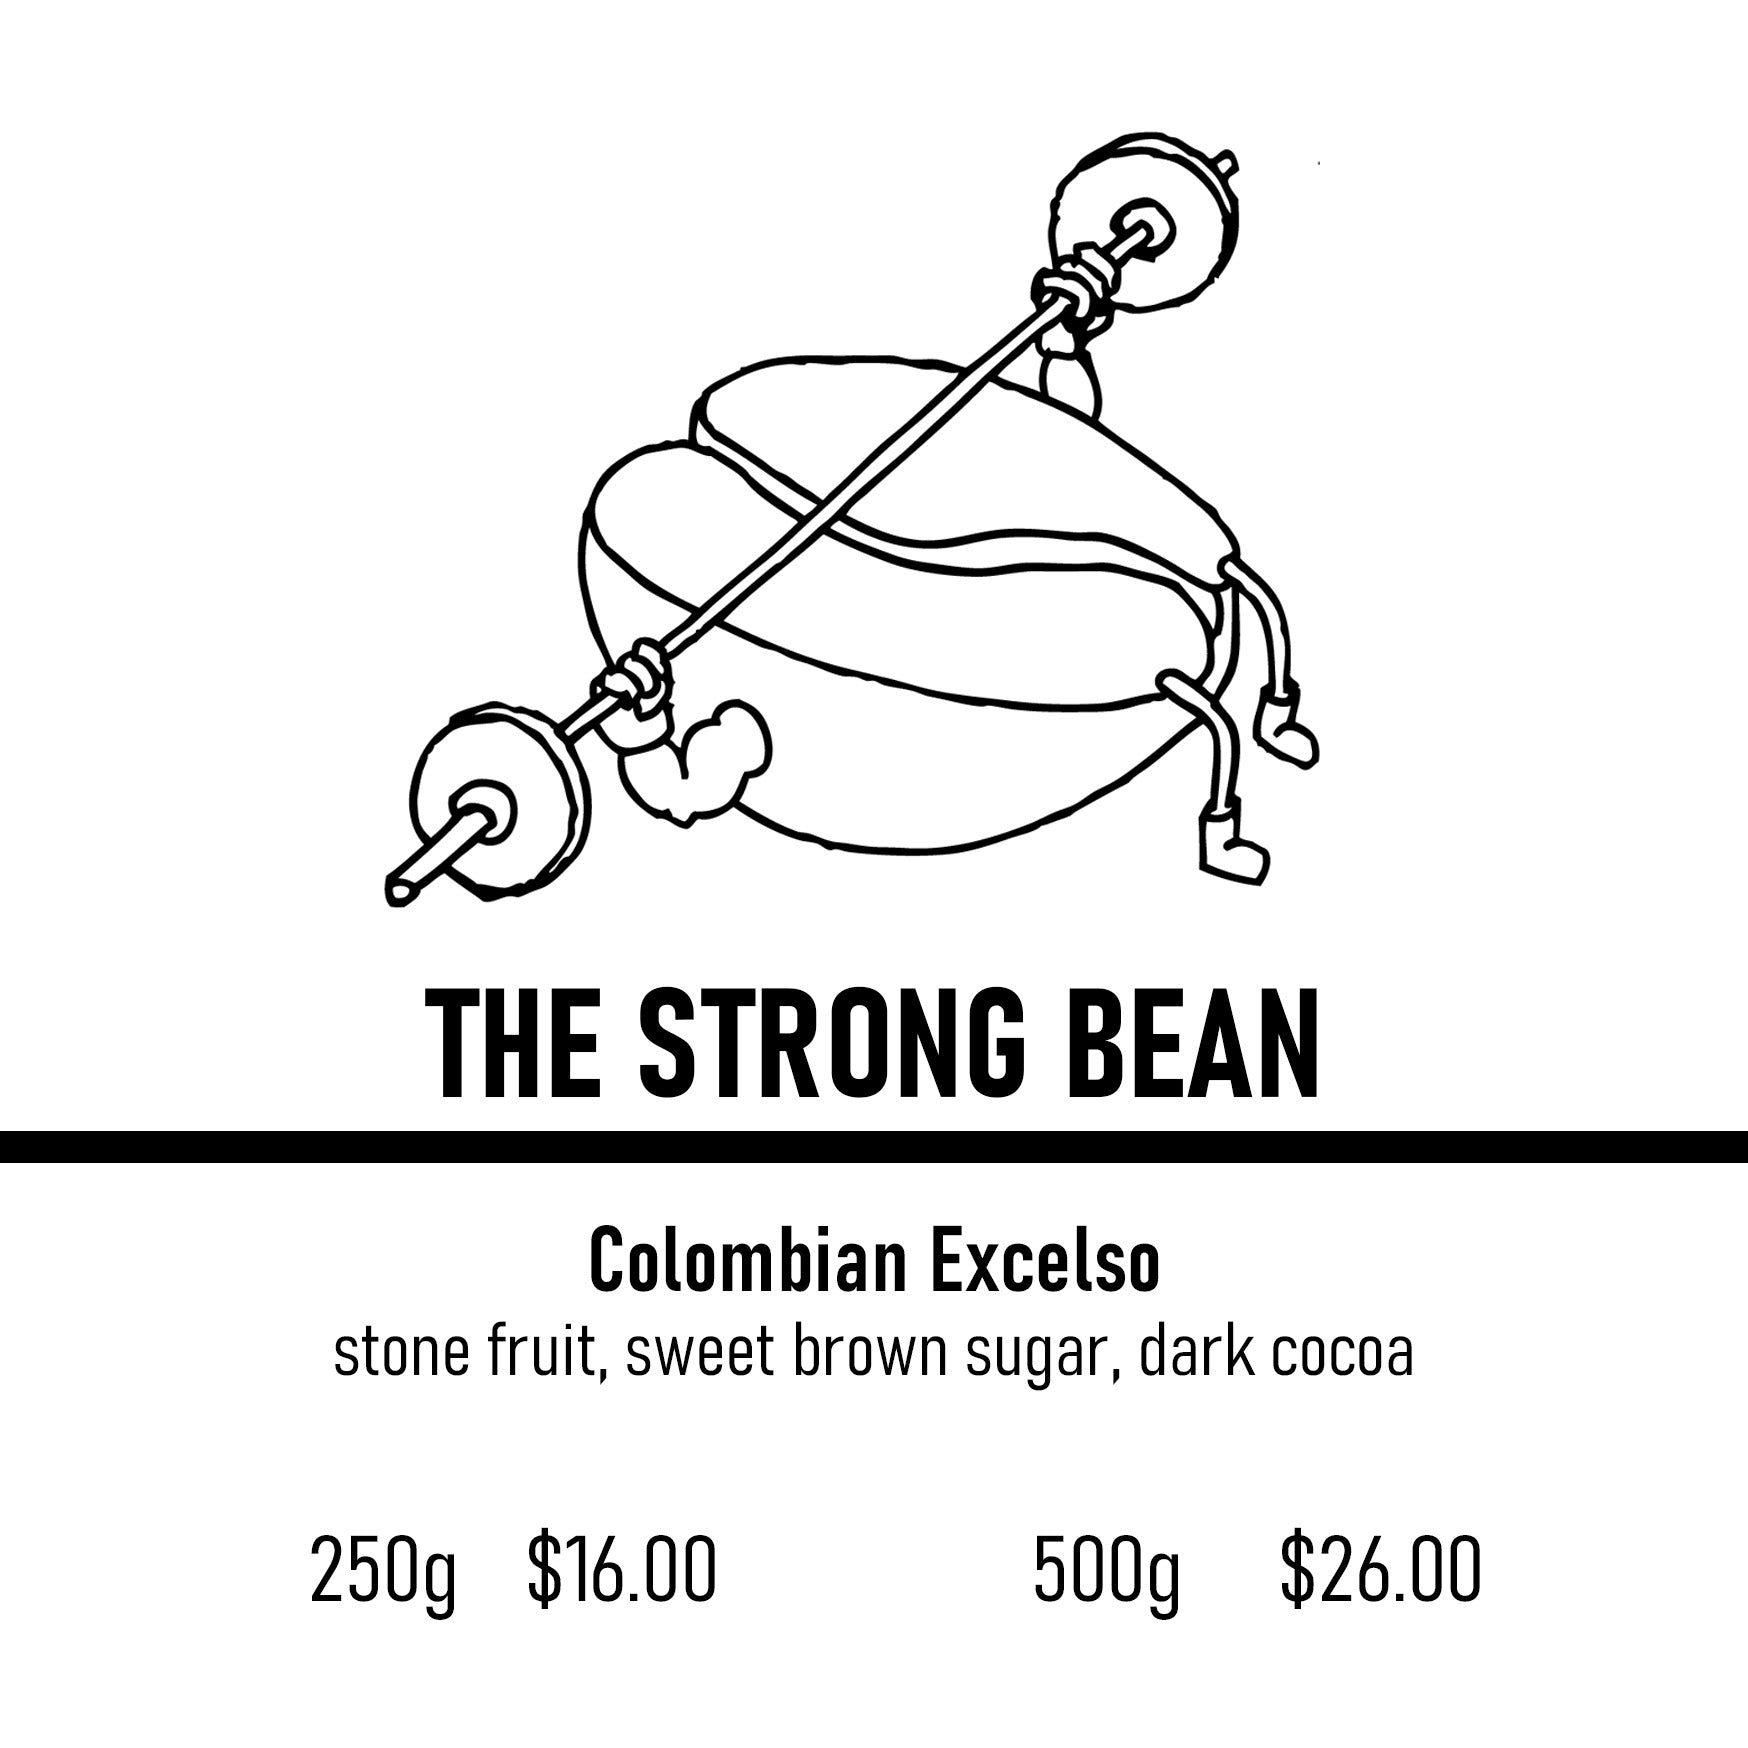 The Strong Bean